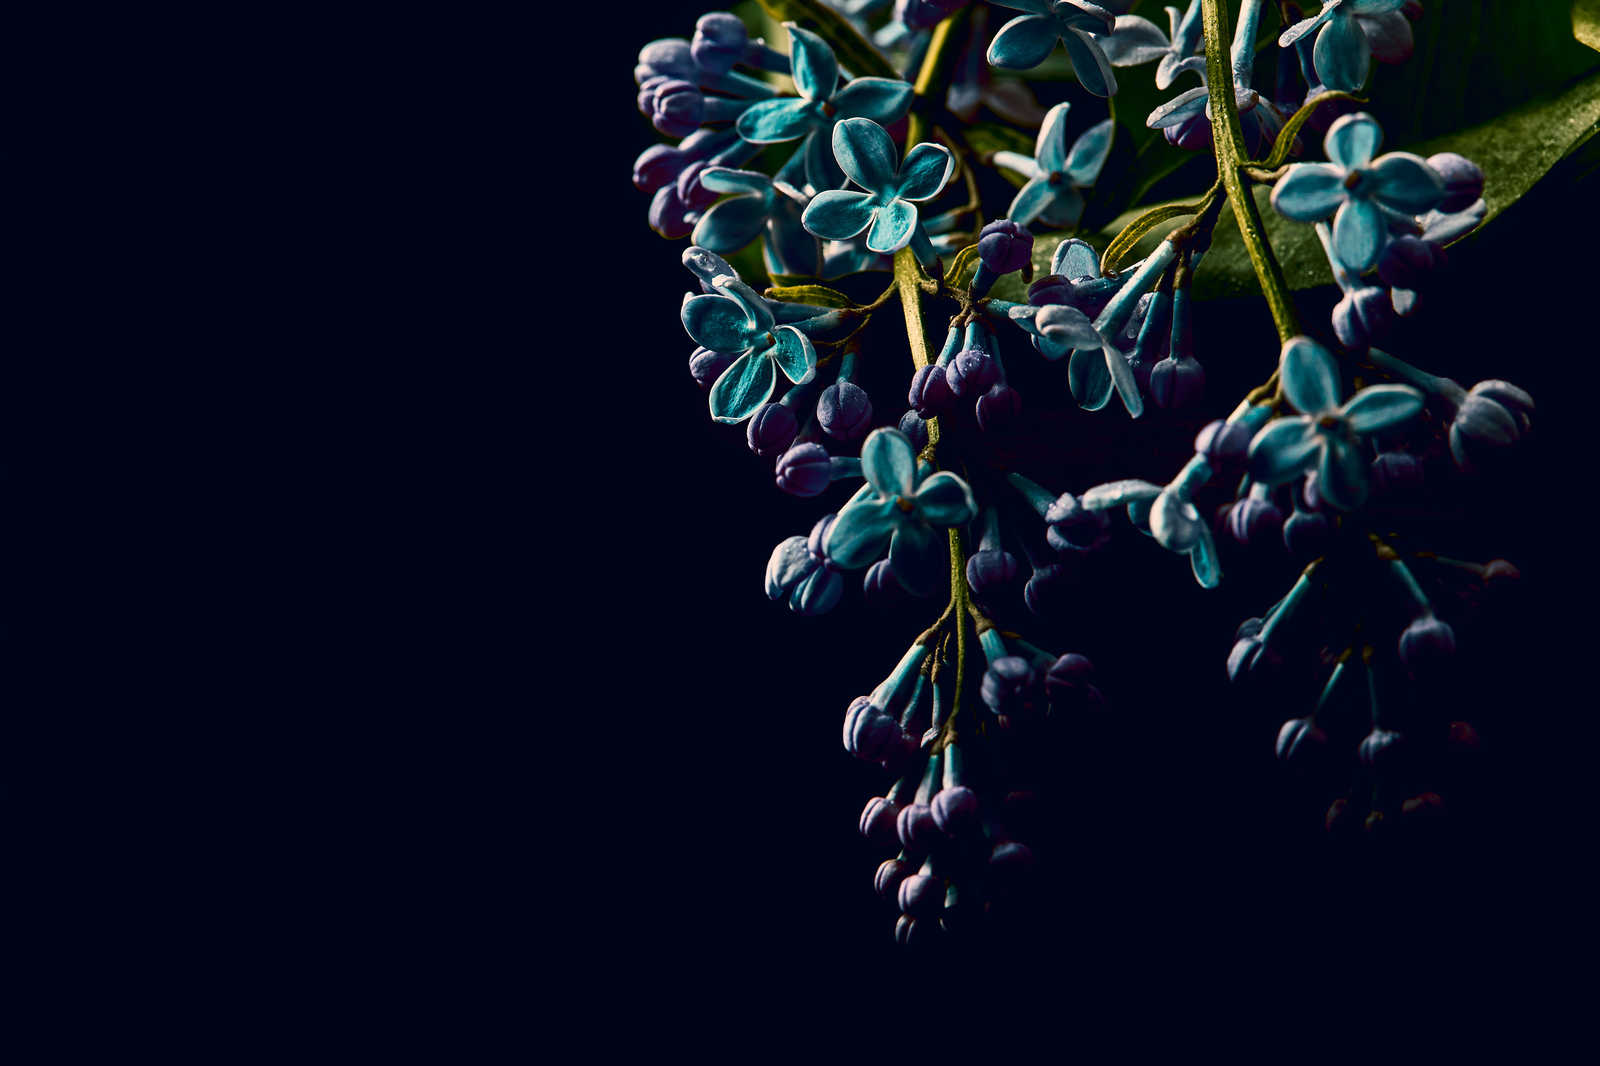             Toile Fleurs sur fond noir Close-Up - 0,90 m x 0,60 m
        